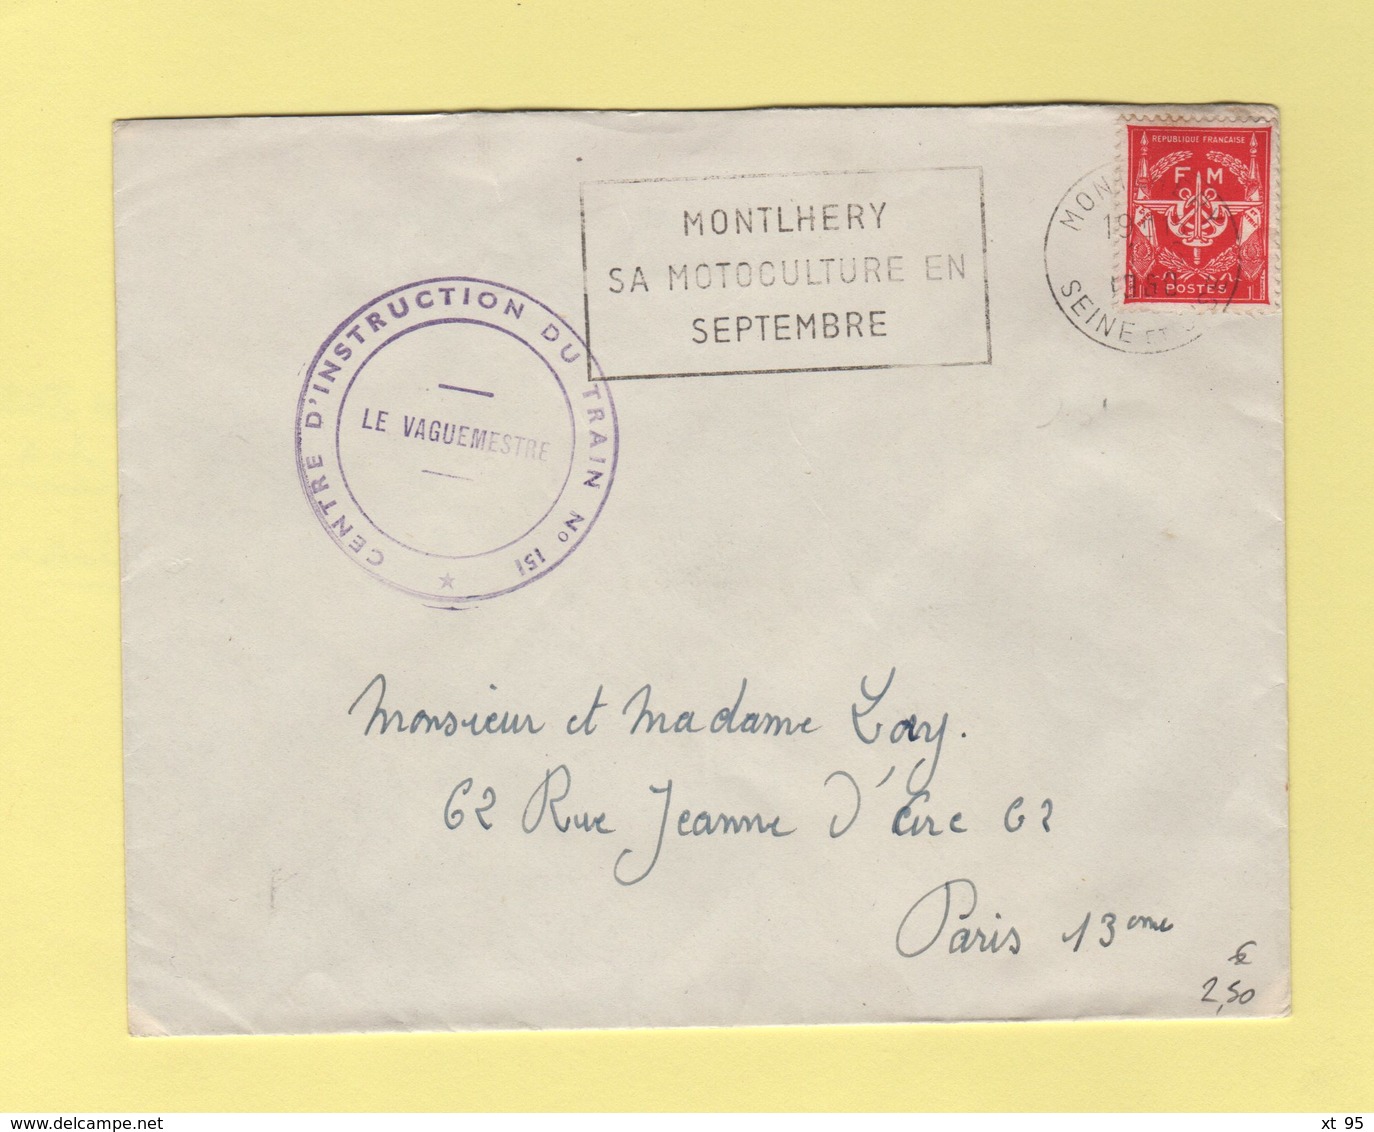 Centre D Instruction Du Train N°151 - Montlhery Sa Motoculture En Septembre - 1960 - Timbre FM - Military Postage Stamps